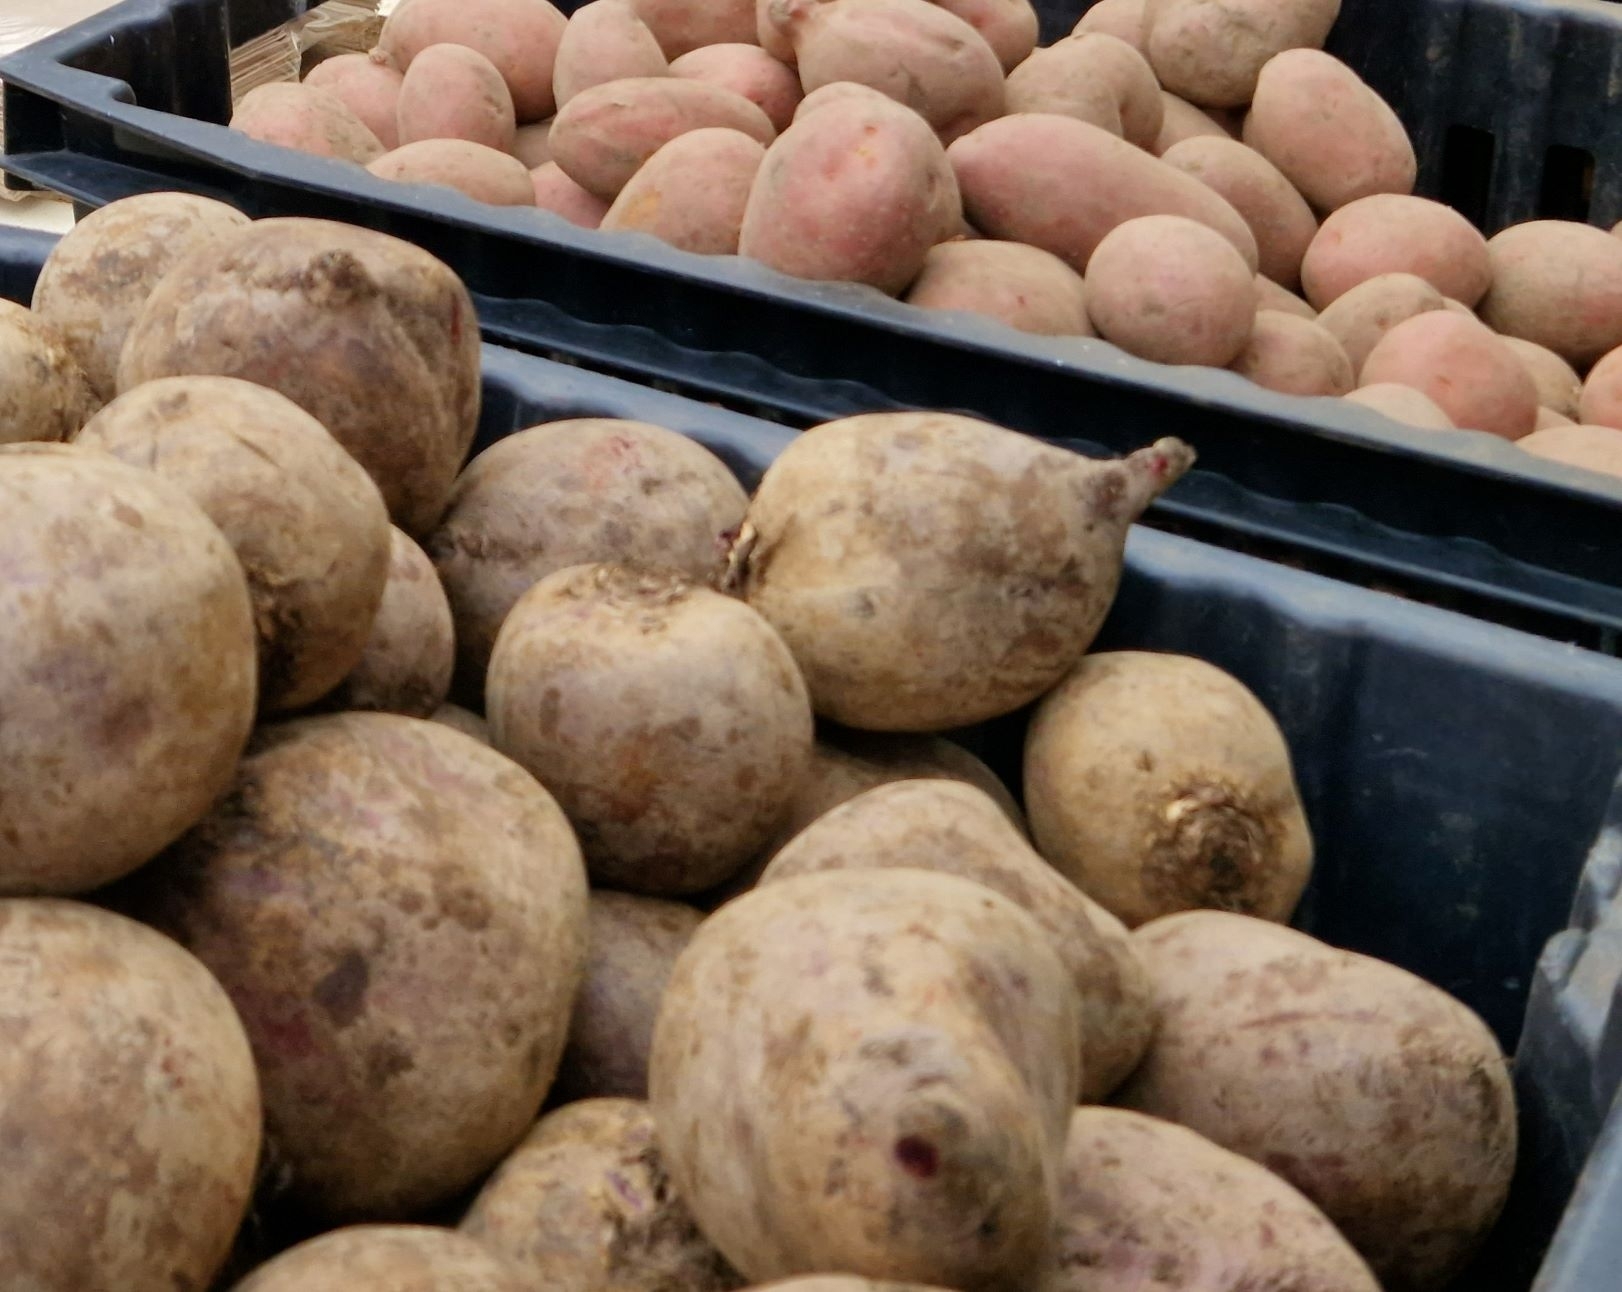 Gruodžio viduryje bulvių ir daržovių mažmeninės kainos kito nedaug